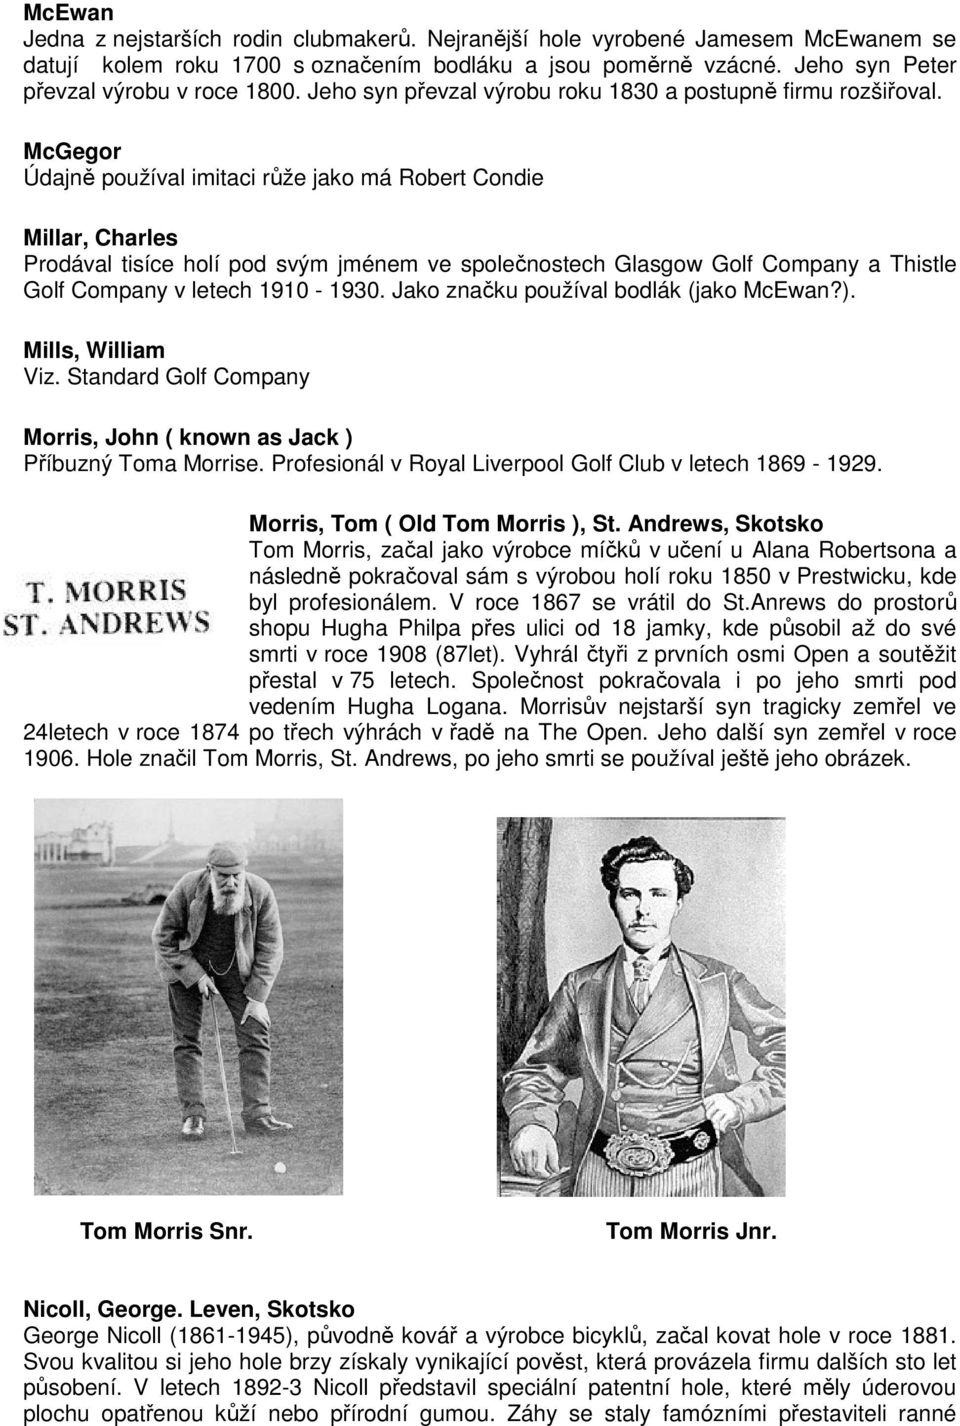 McGegor Údajně používal imitaci růže jako má Robert Condie Millar, Charles Prodával tisíce holí pod svým jménem ve společnostech Glasgow Golf Company a Thistle Golf Company v letech 1910-1930.